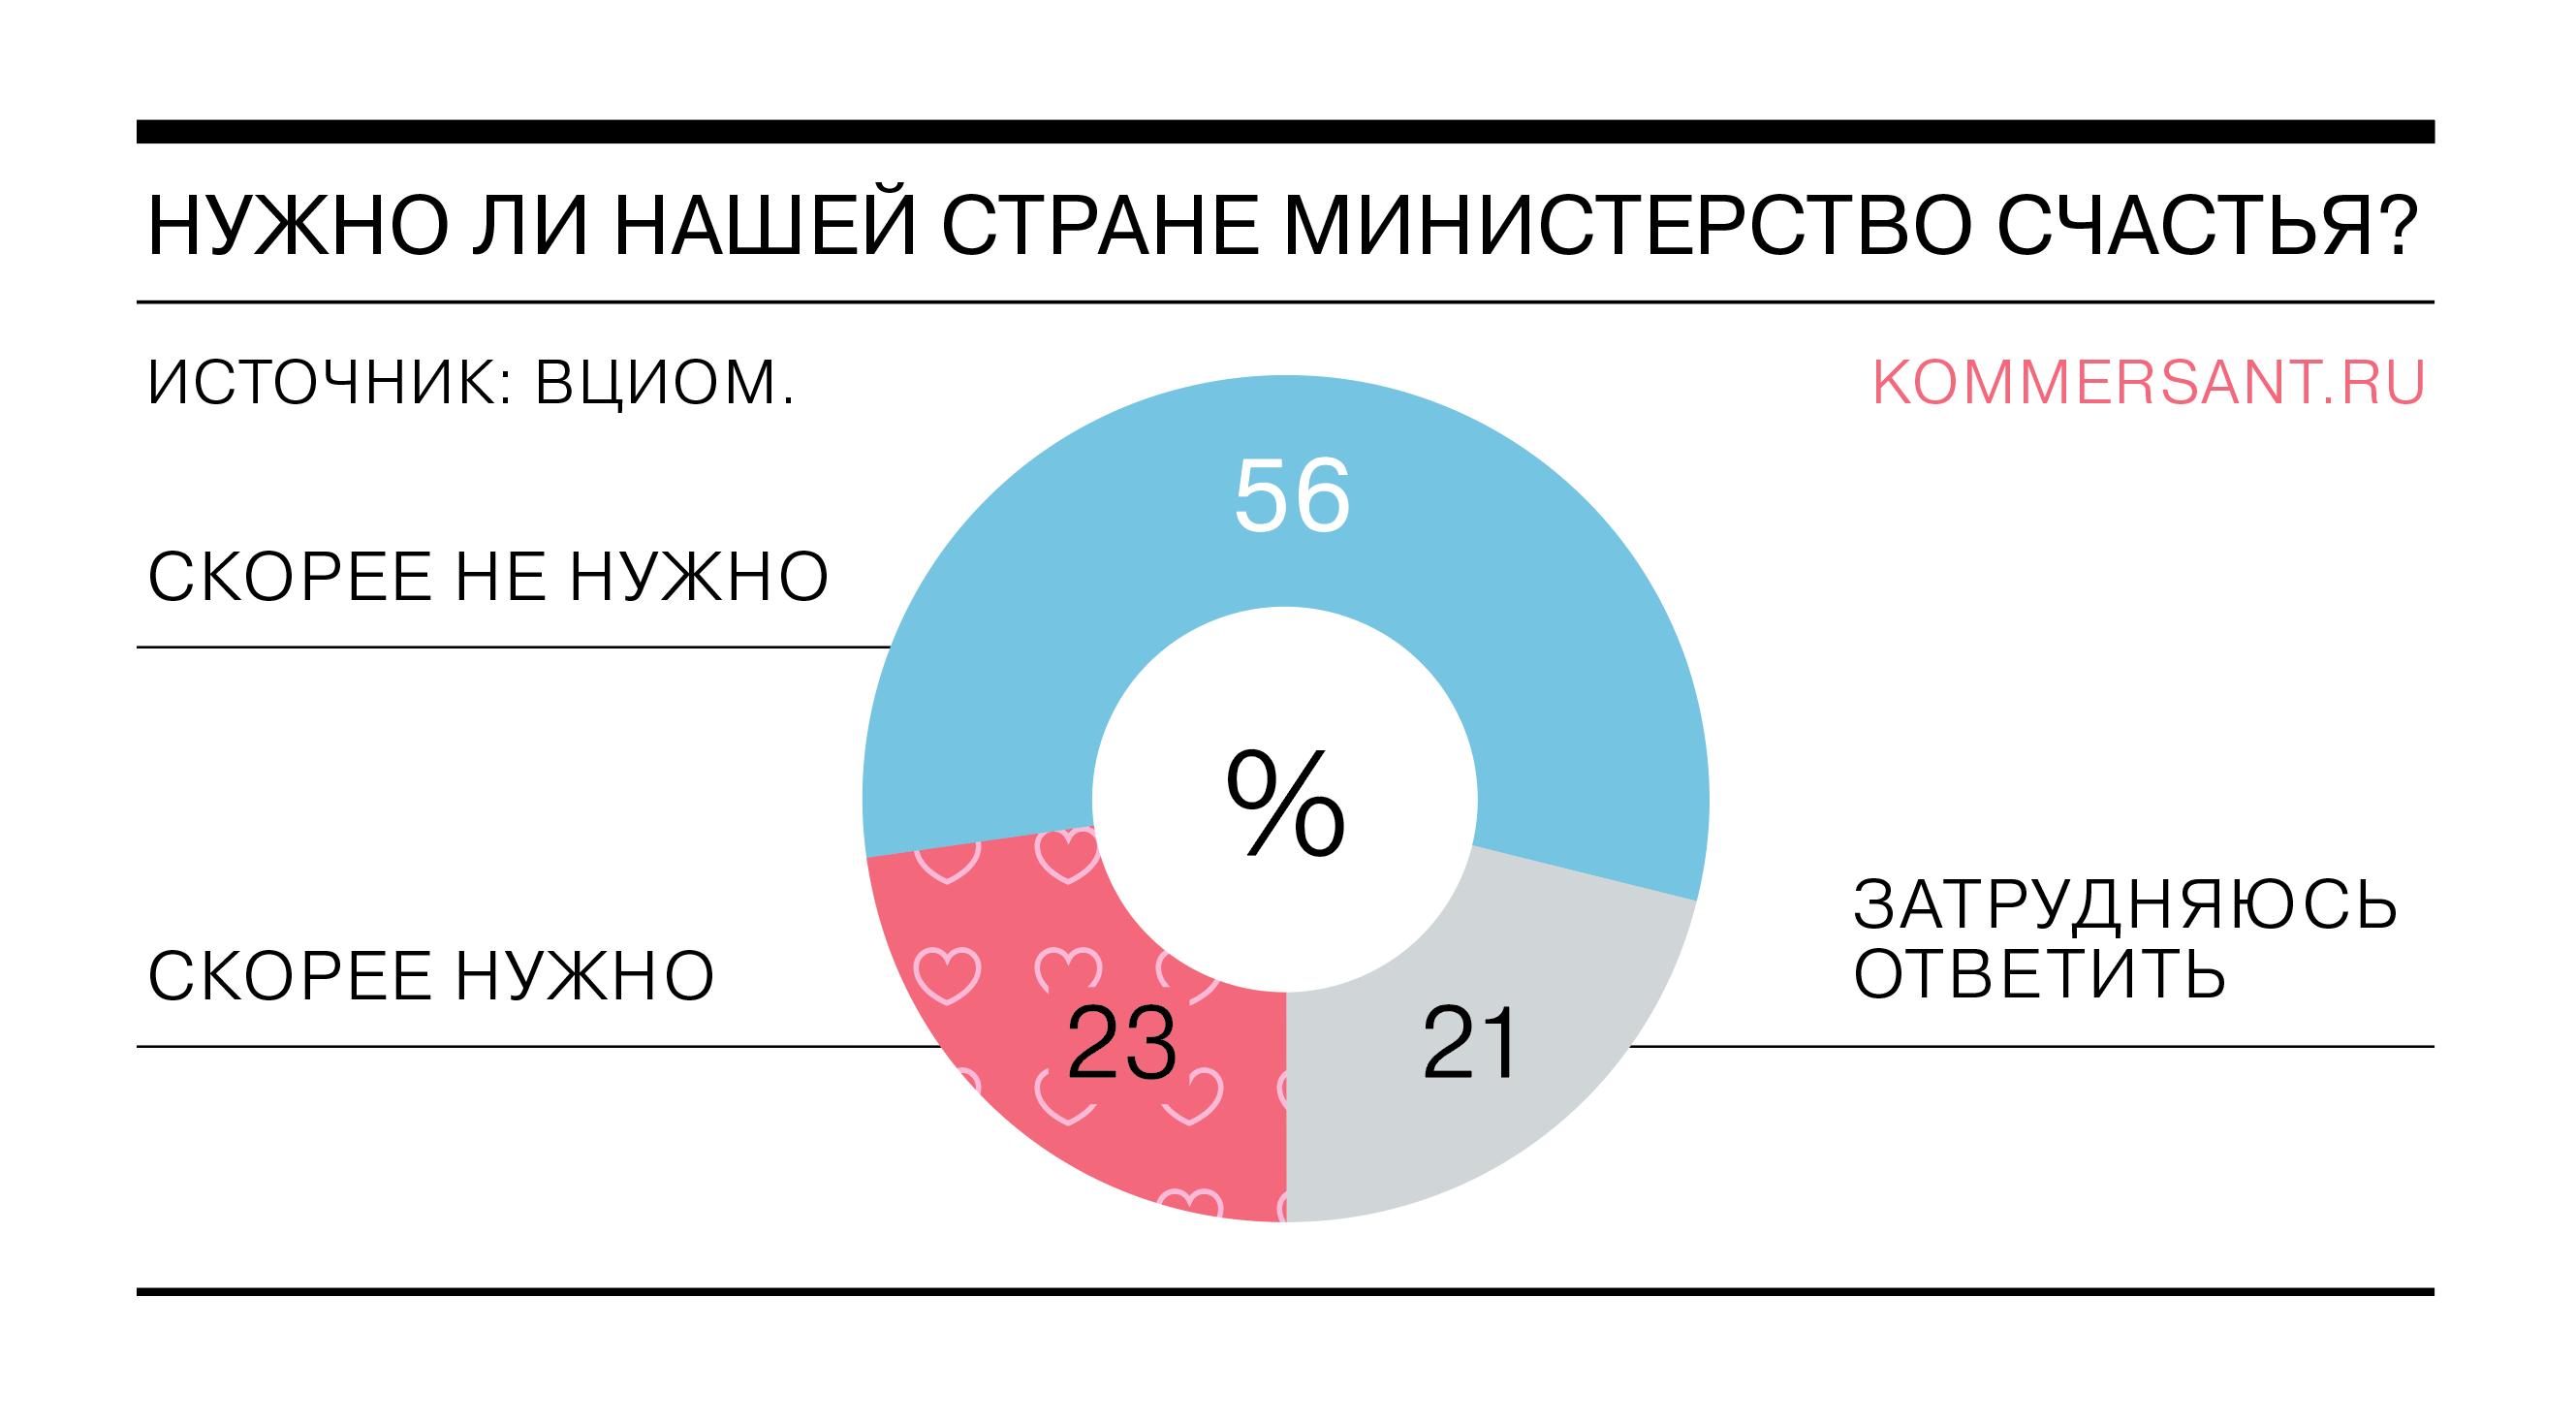 Менее четверти россиян считают, что стране нужно Министерство счастья